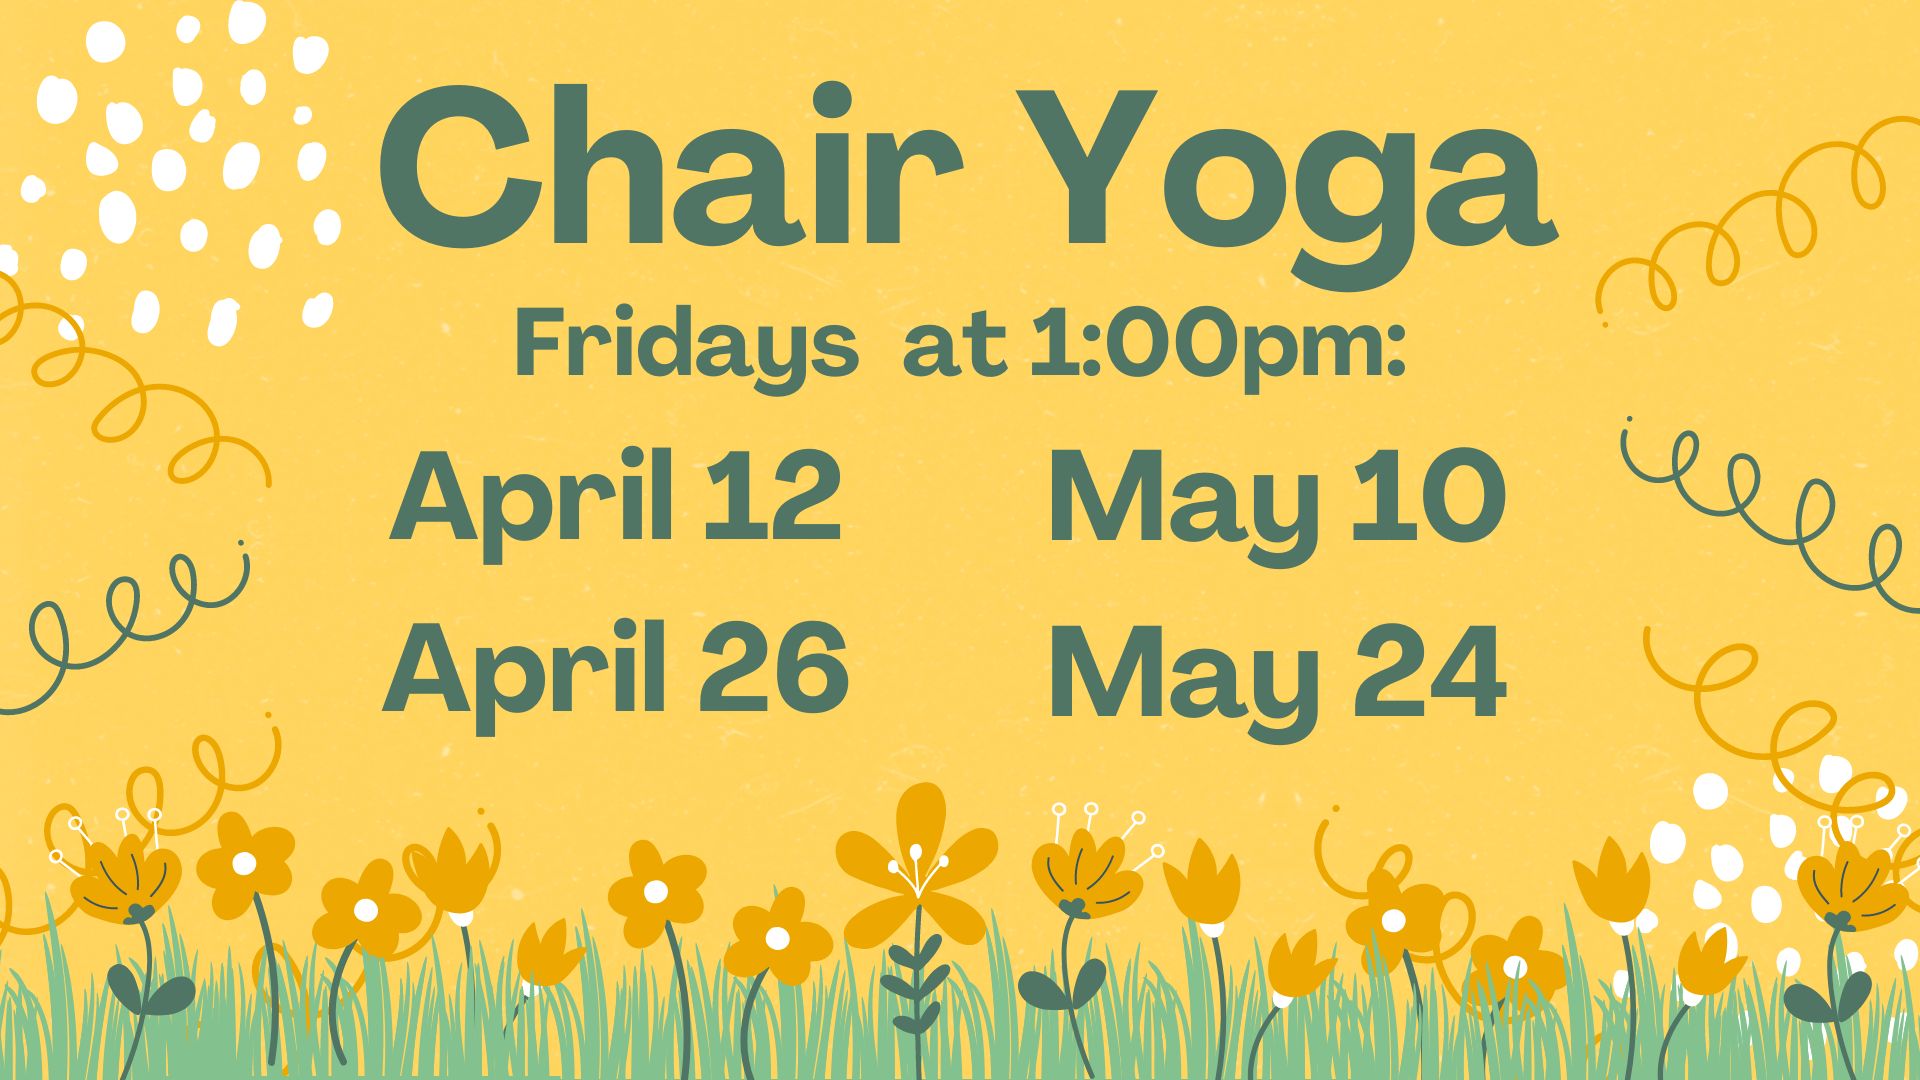 Chair Yoga at Smyrna Public Library, Fridays April 12, April 26, May 10, and May 24 at 1:00pm